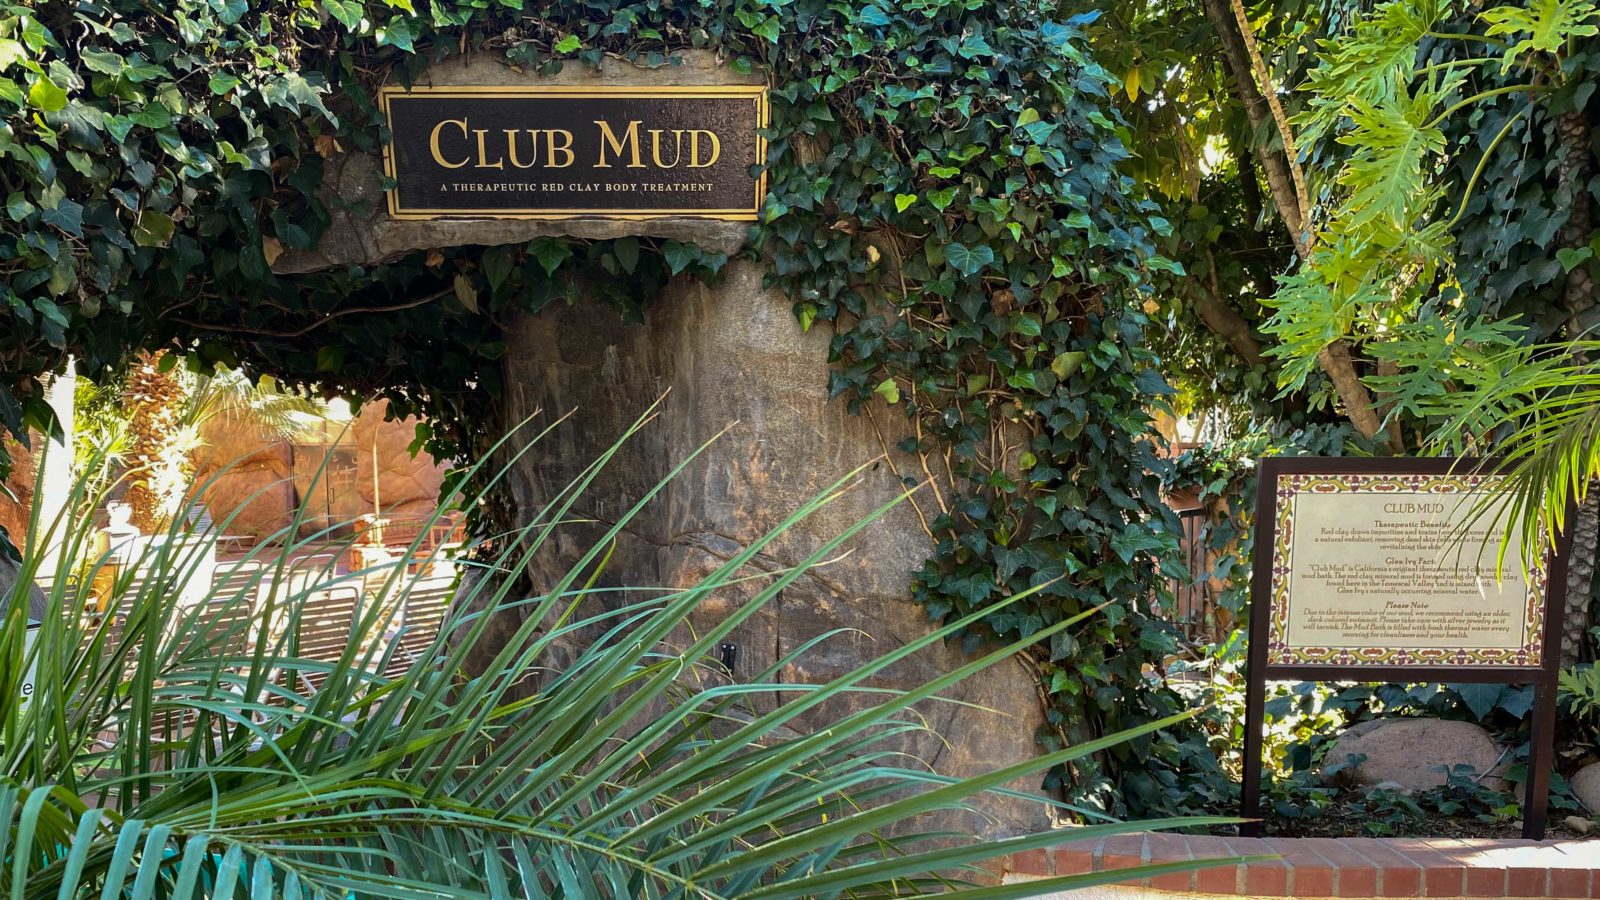 Glen Ivy Hot Springs Club Mud signs